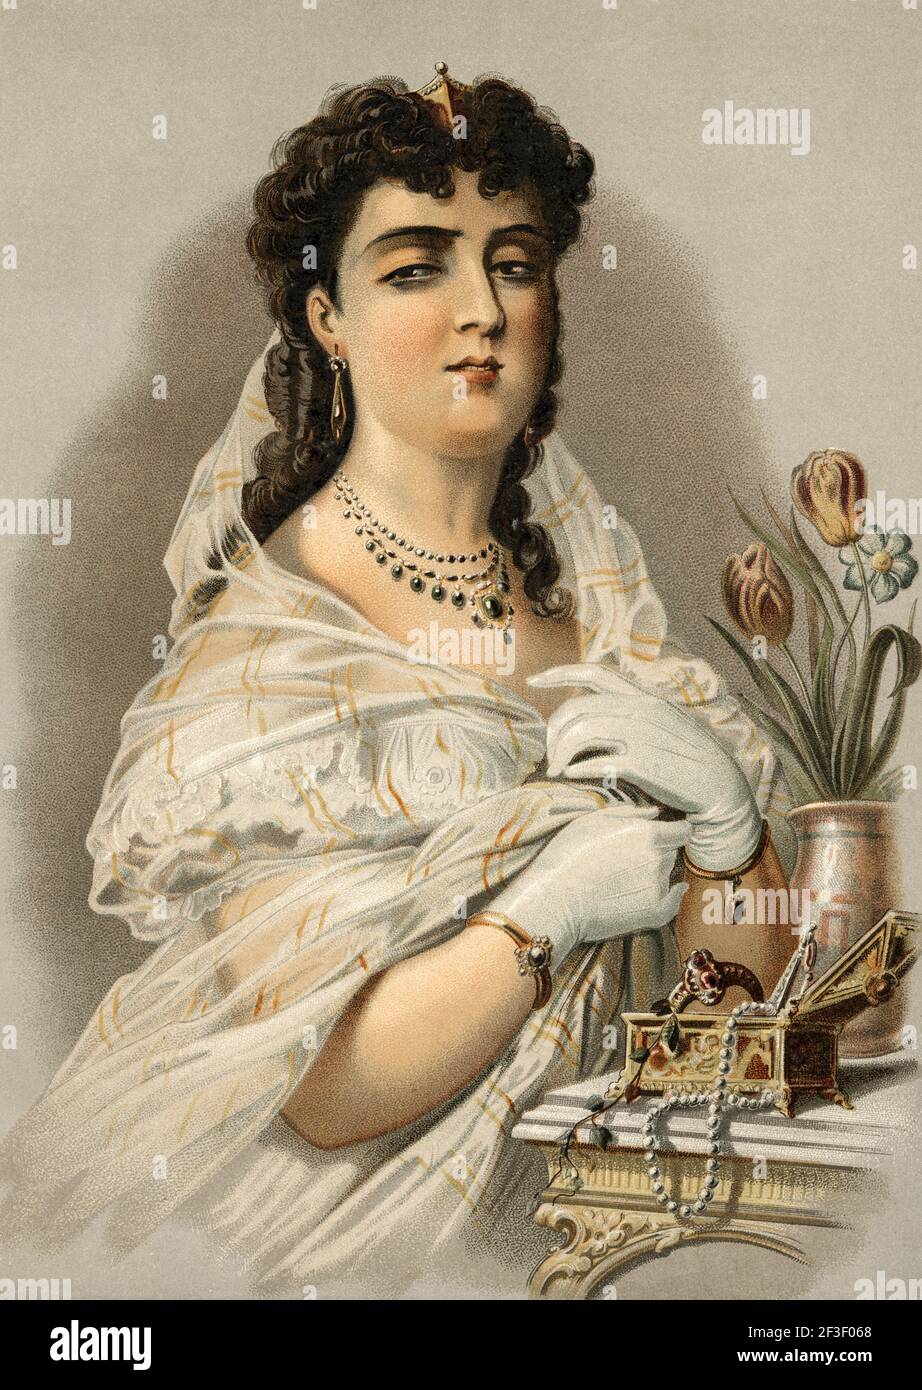 Vanity, femme. La vanité représentée dans le portrait d'une dame, vêtue de vêtements traditionnels du XIXe siècle. Illustration de la lithographie de couleur de l'ancien XIXe siècle d'El Mundo Ilustrado 1879 Banque D'Images